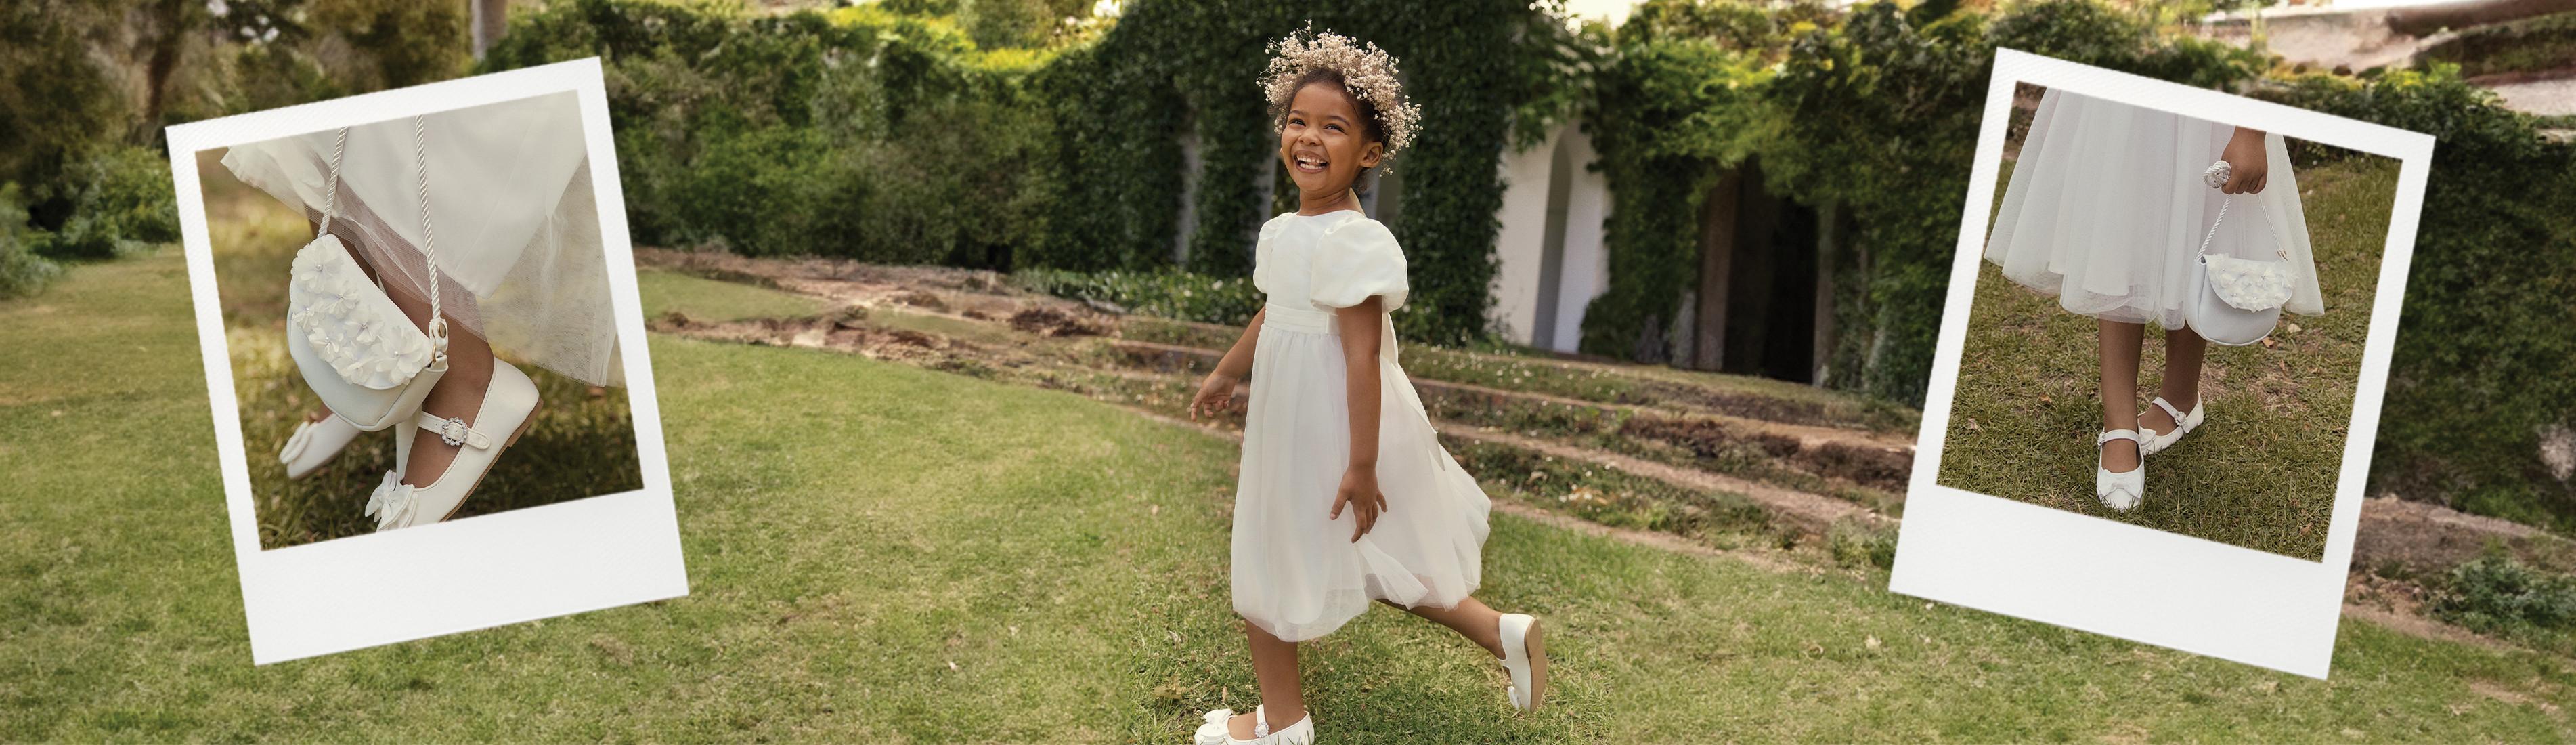 Bambina che indossa un abito bianco e scarpe bianche